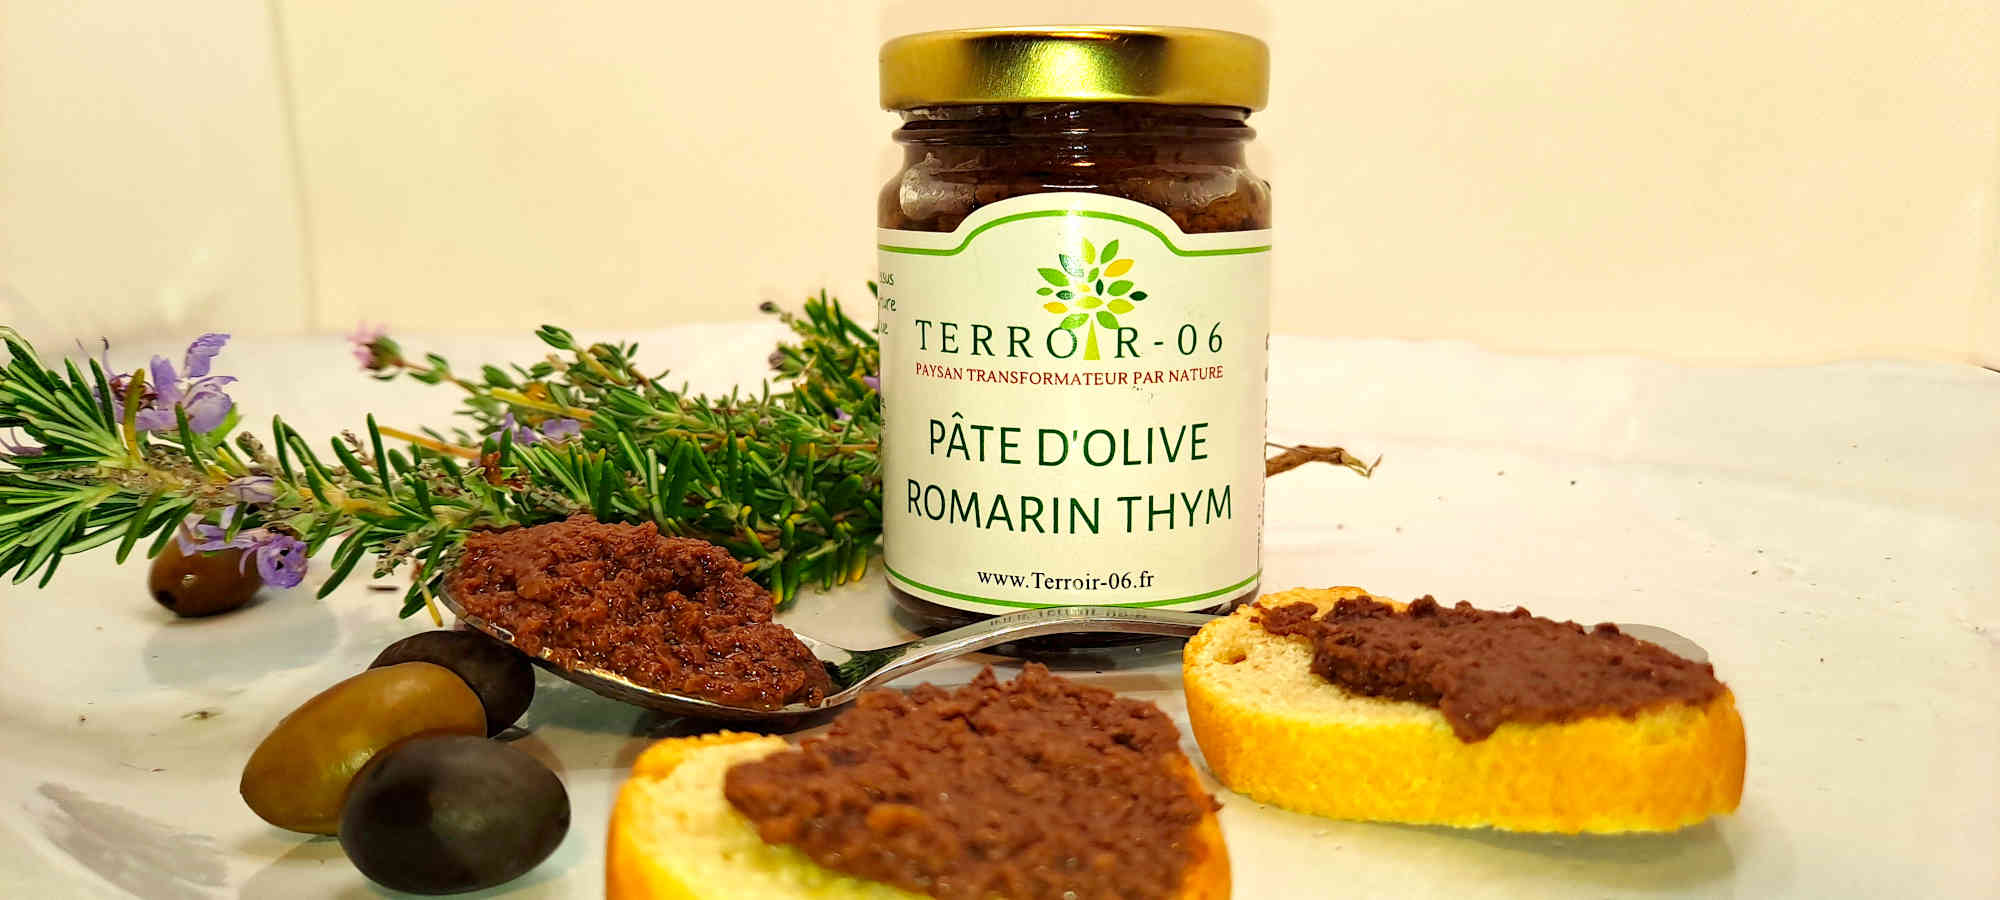 Pâte d'olive aromatisée thym-romarin olives variété cailletier produits locaux grasse cote d azur